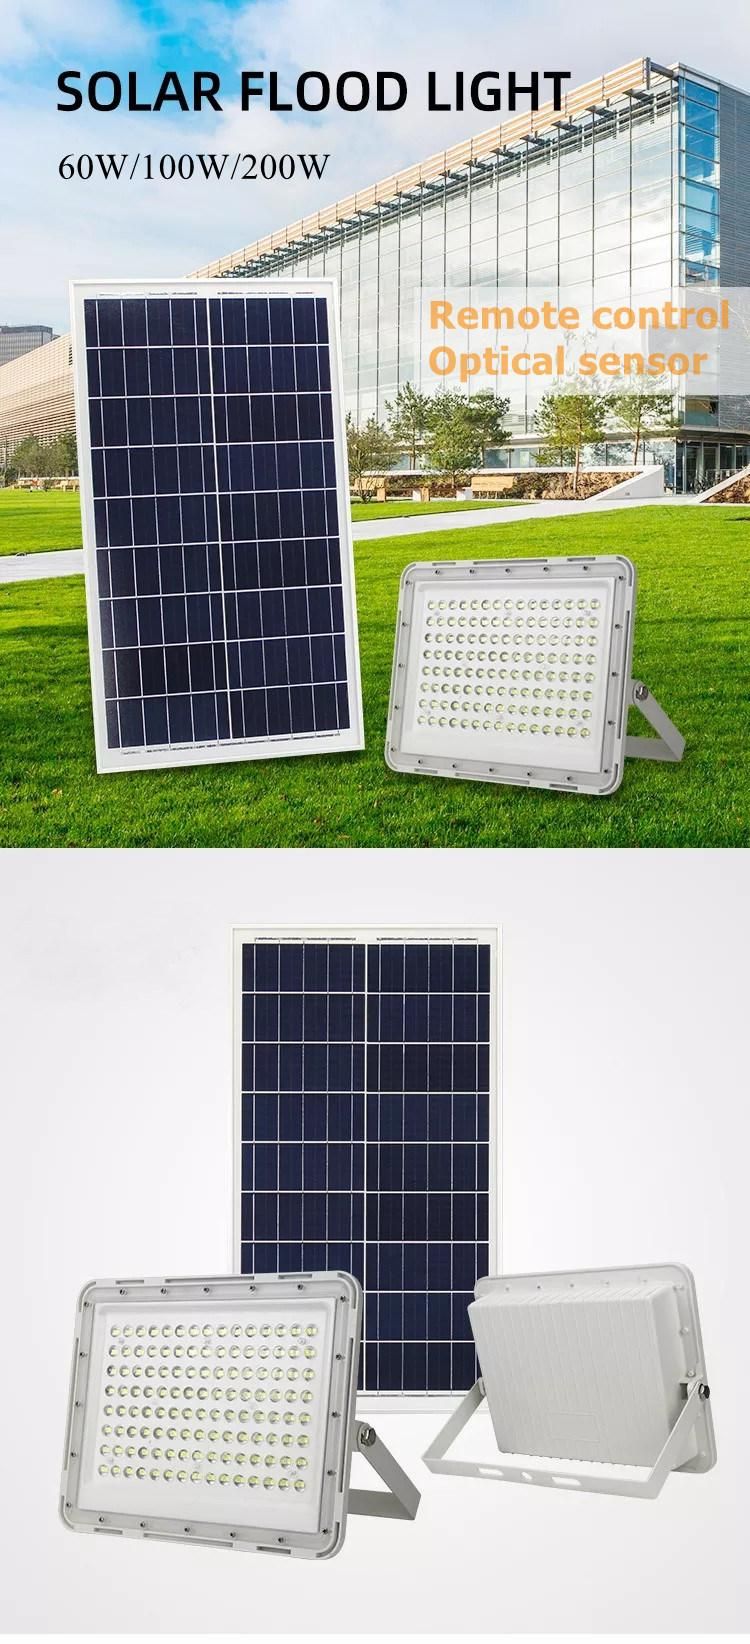 Solar Powered 100W LED Solar Flood Light for Outdoor Lighting